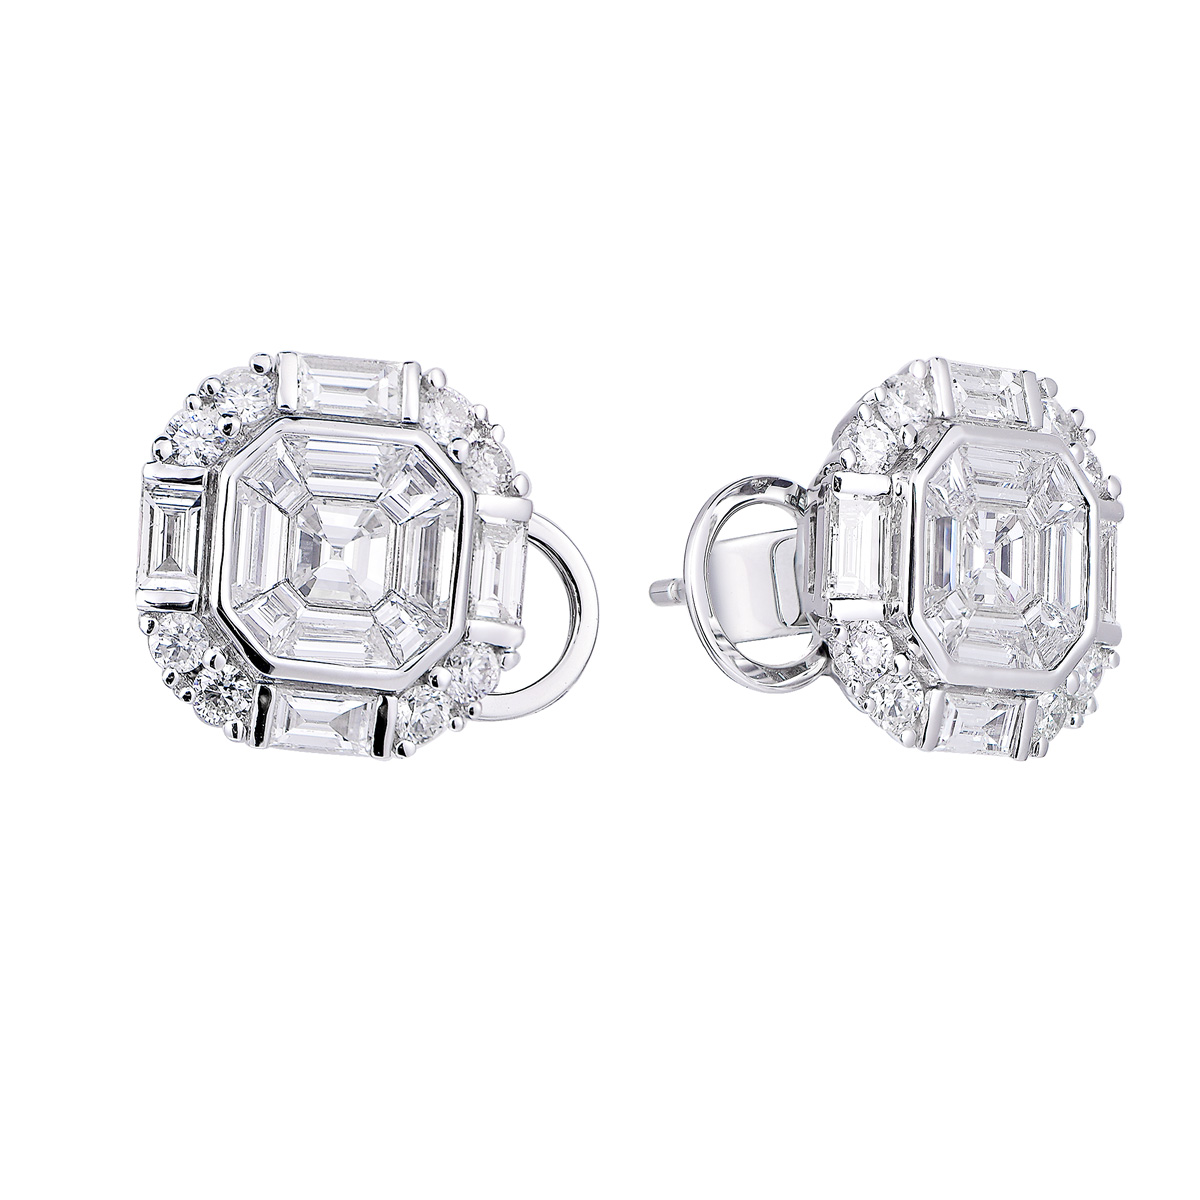 AM25891W 18K white gold Asscher cut diamond earrings